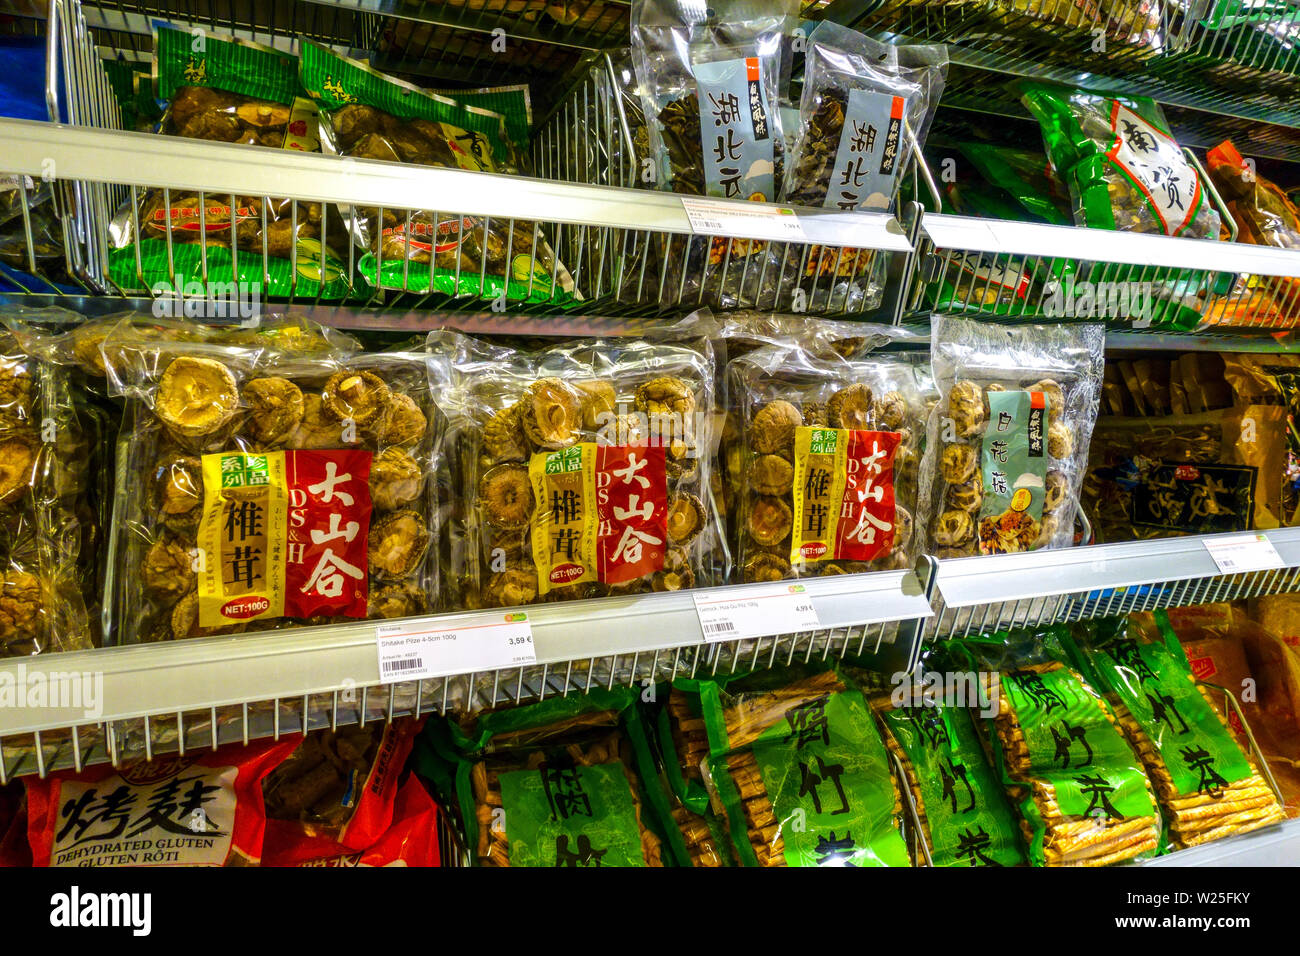 Supermarché asiatique asie 'Go' les rayons des supermarchés, des champignons séchés, Dresden, Allemagne Banque D'Images